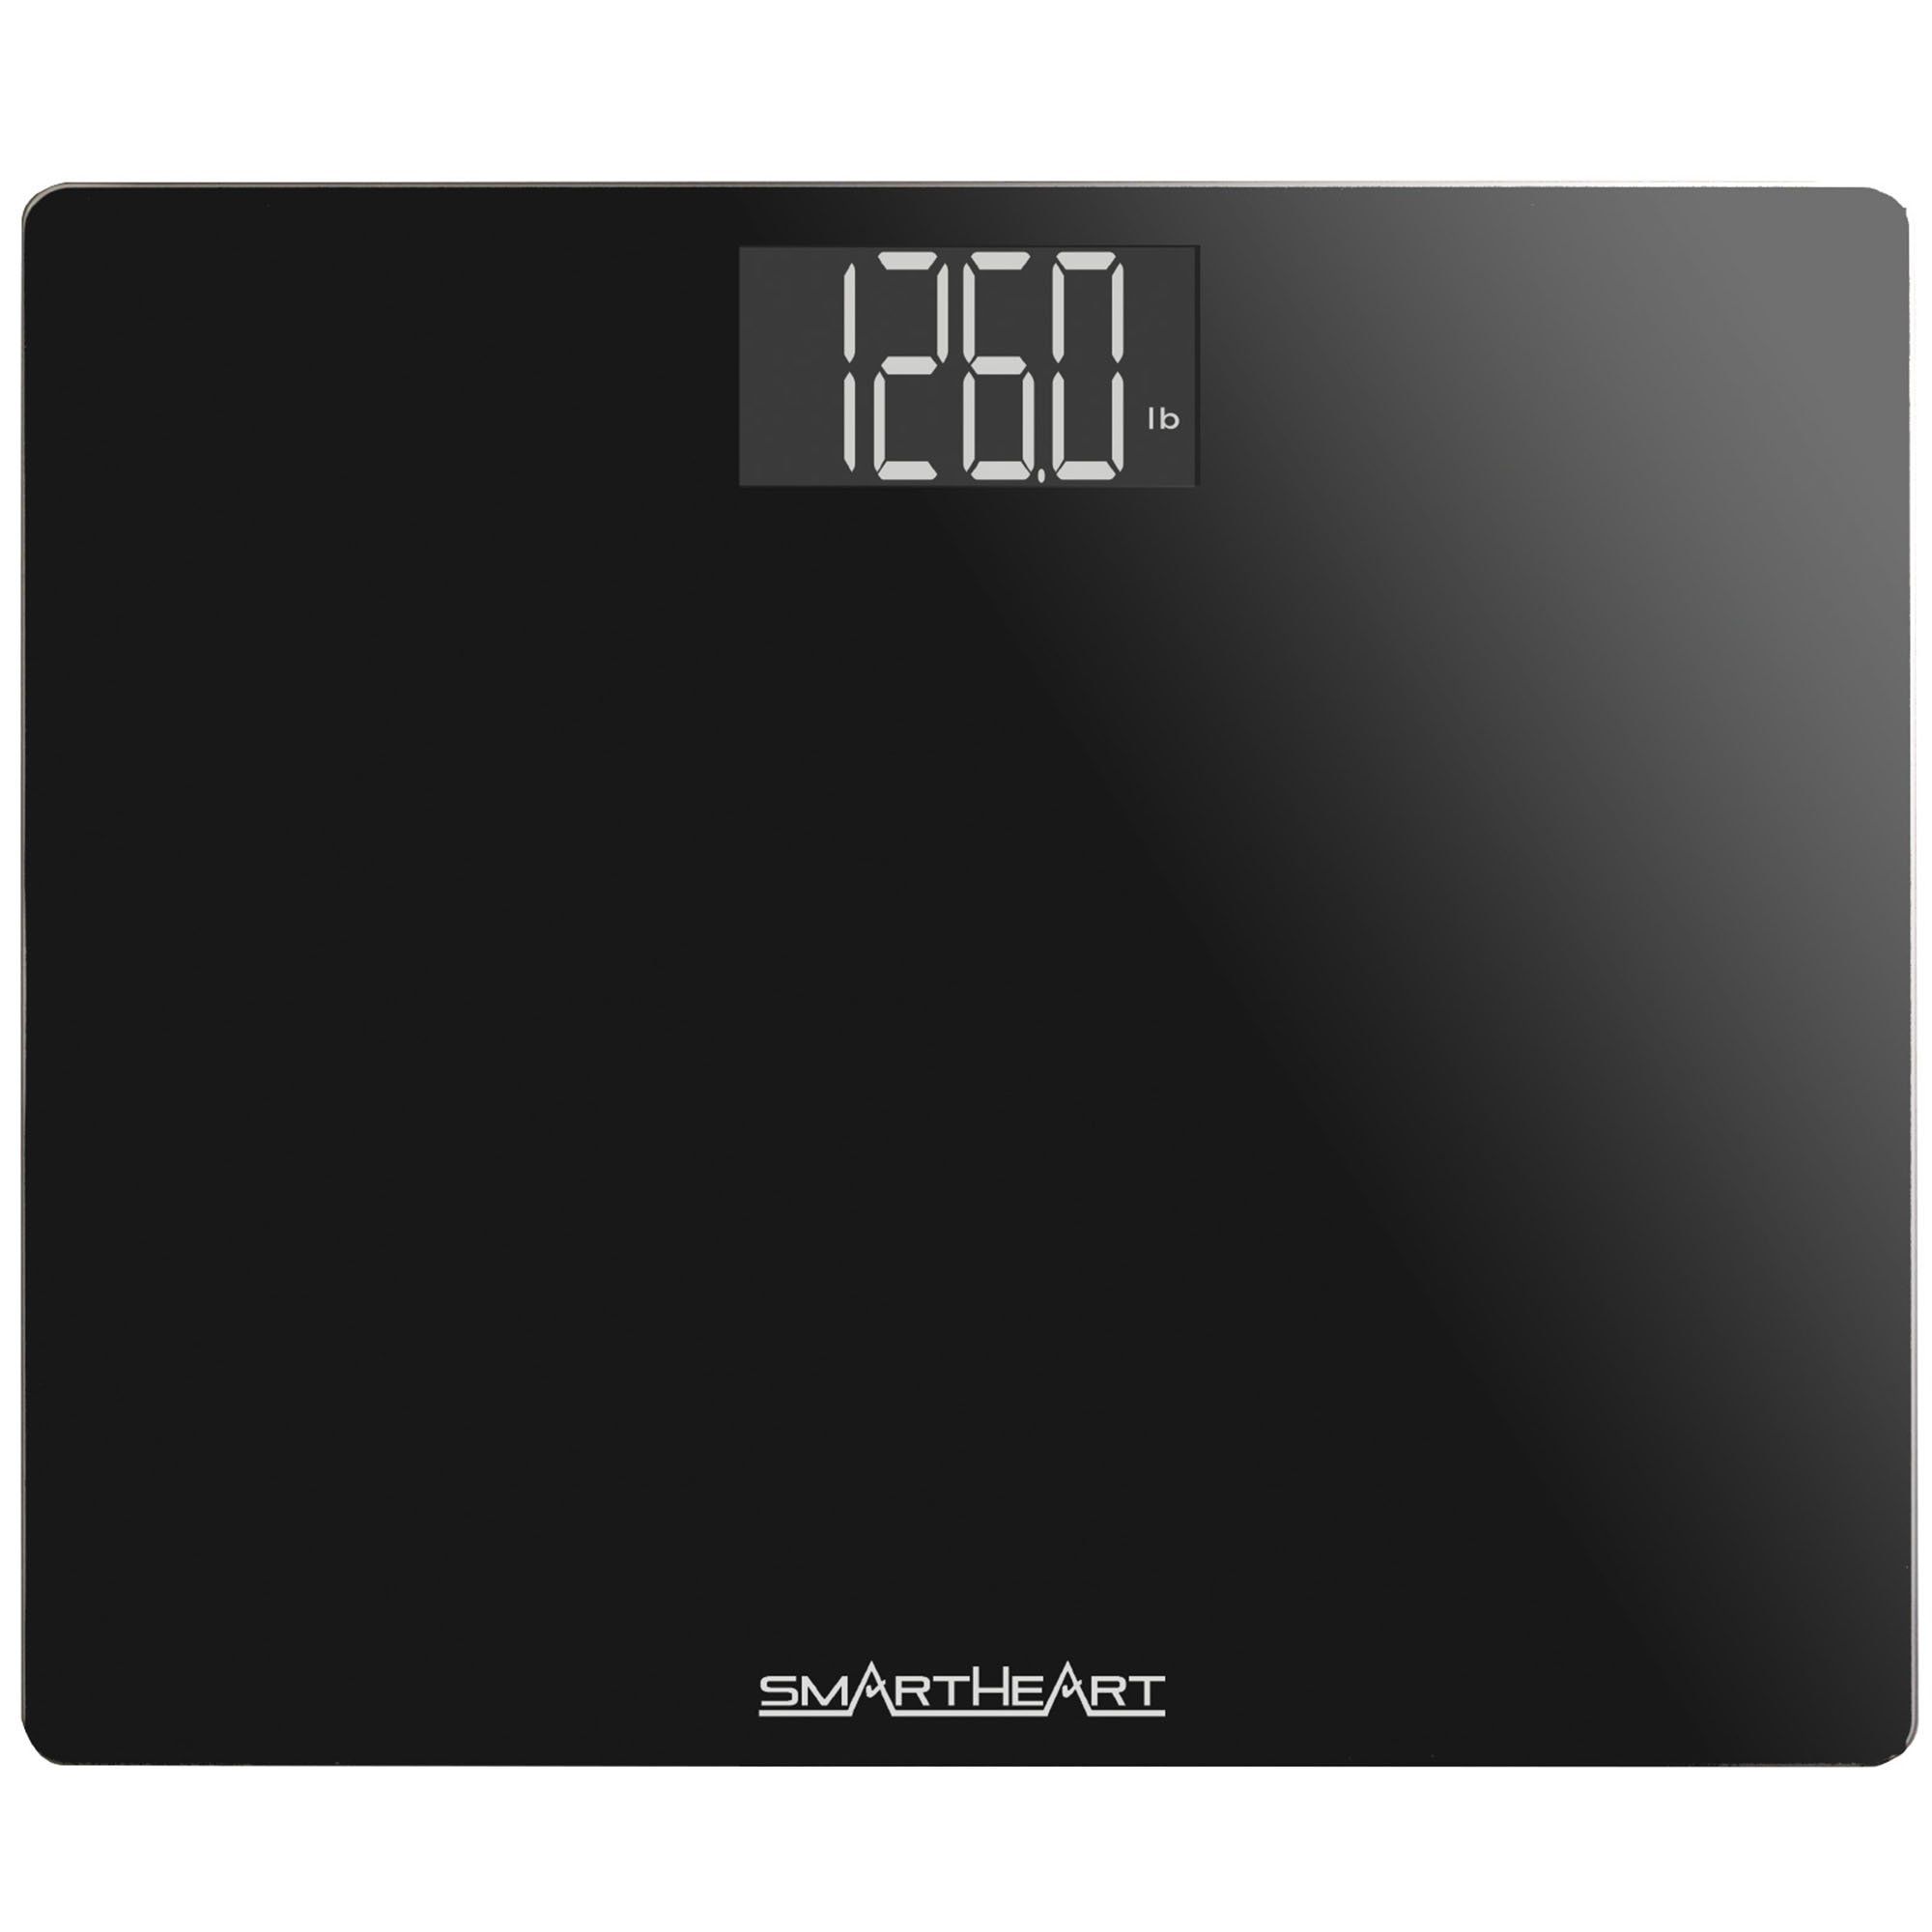 Smartheart Wide Platform Digital Floor Weight Scale -  Black